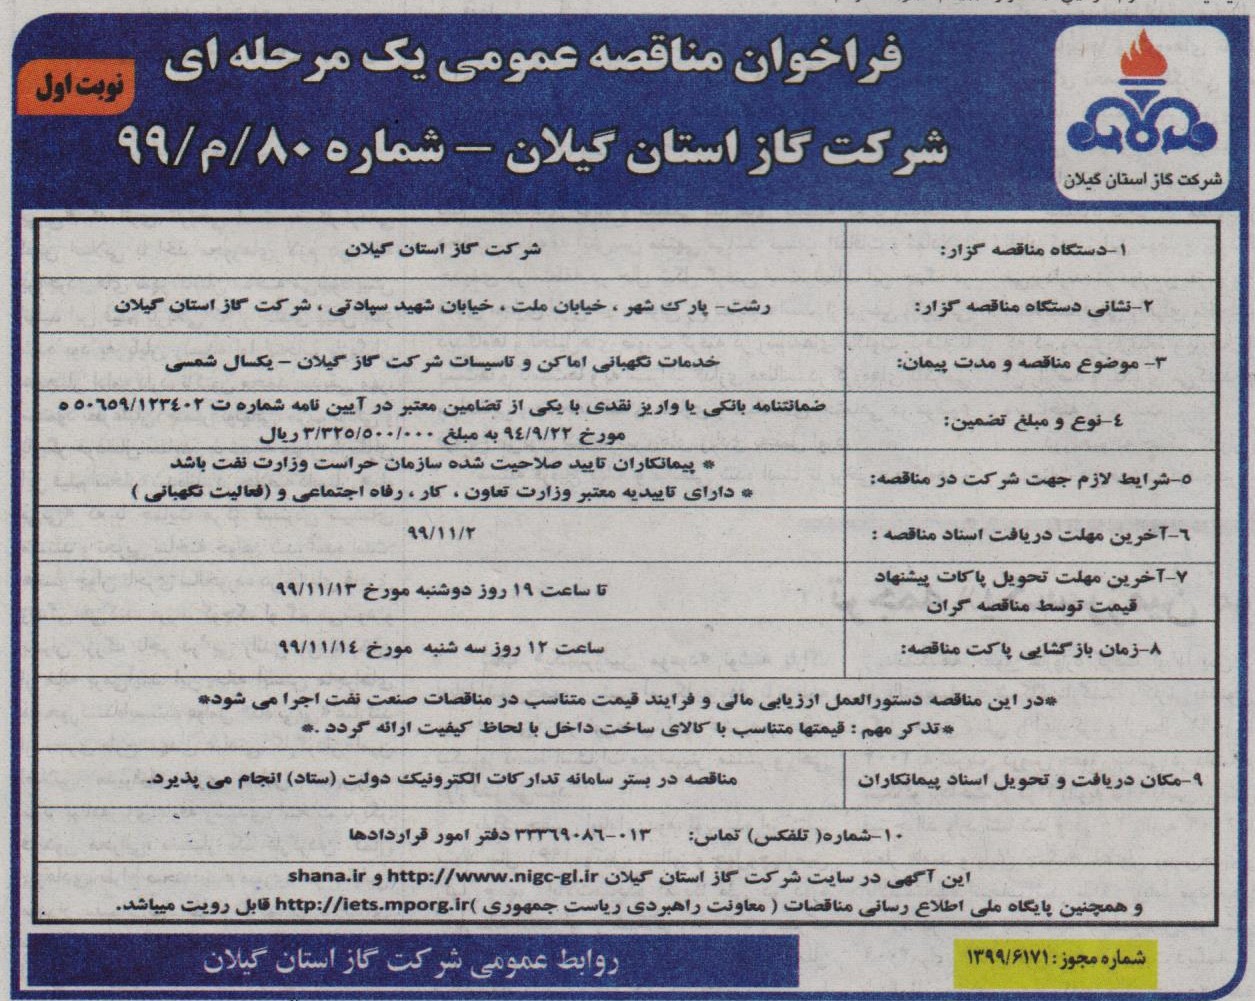 نگهبانی اماکن و تاسیسات شرکت گاز استان گیلان - 30 دی 99